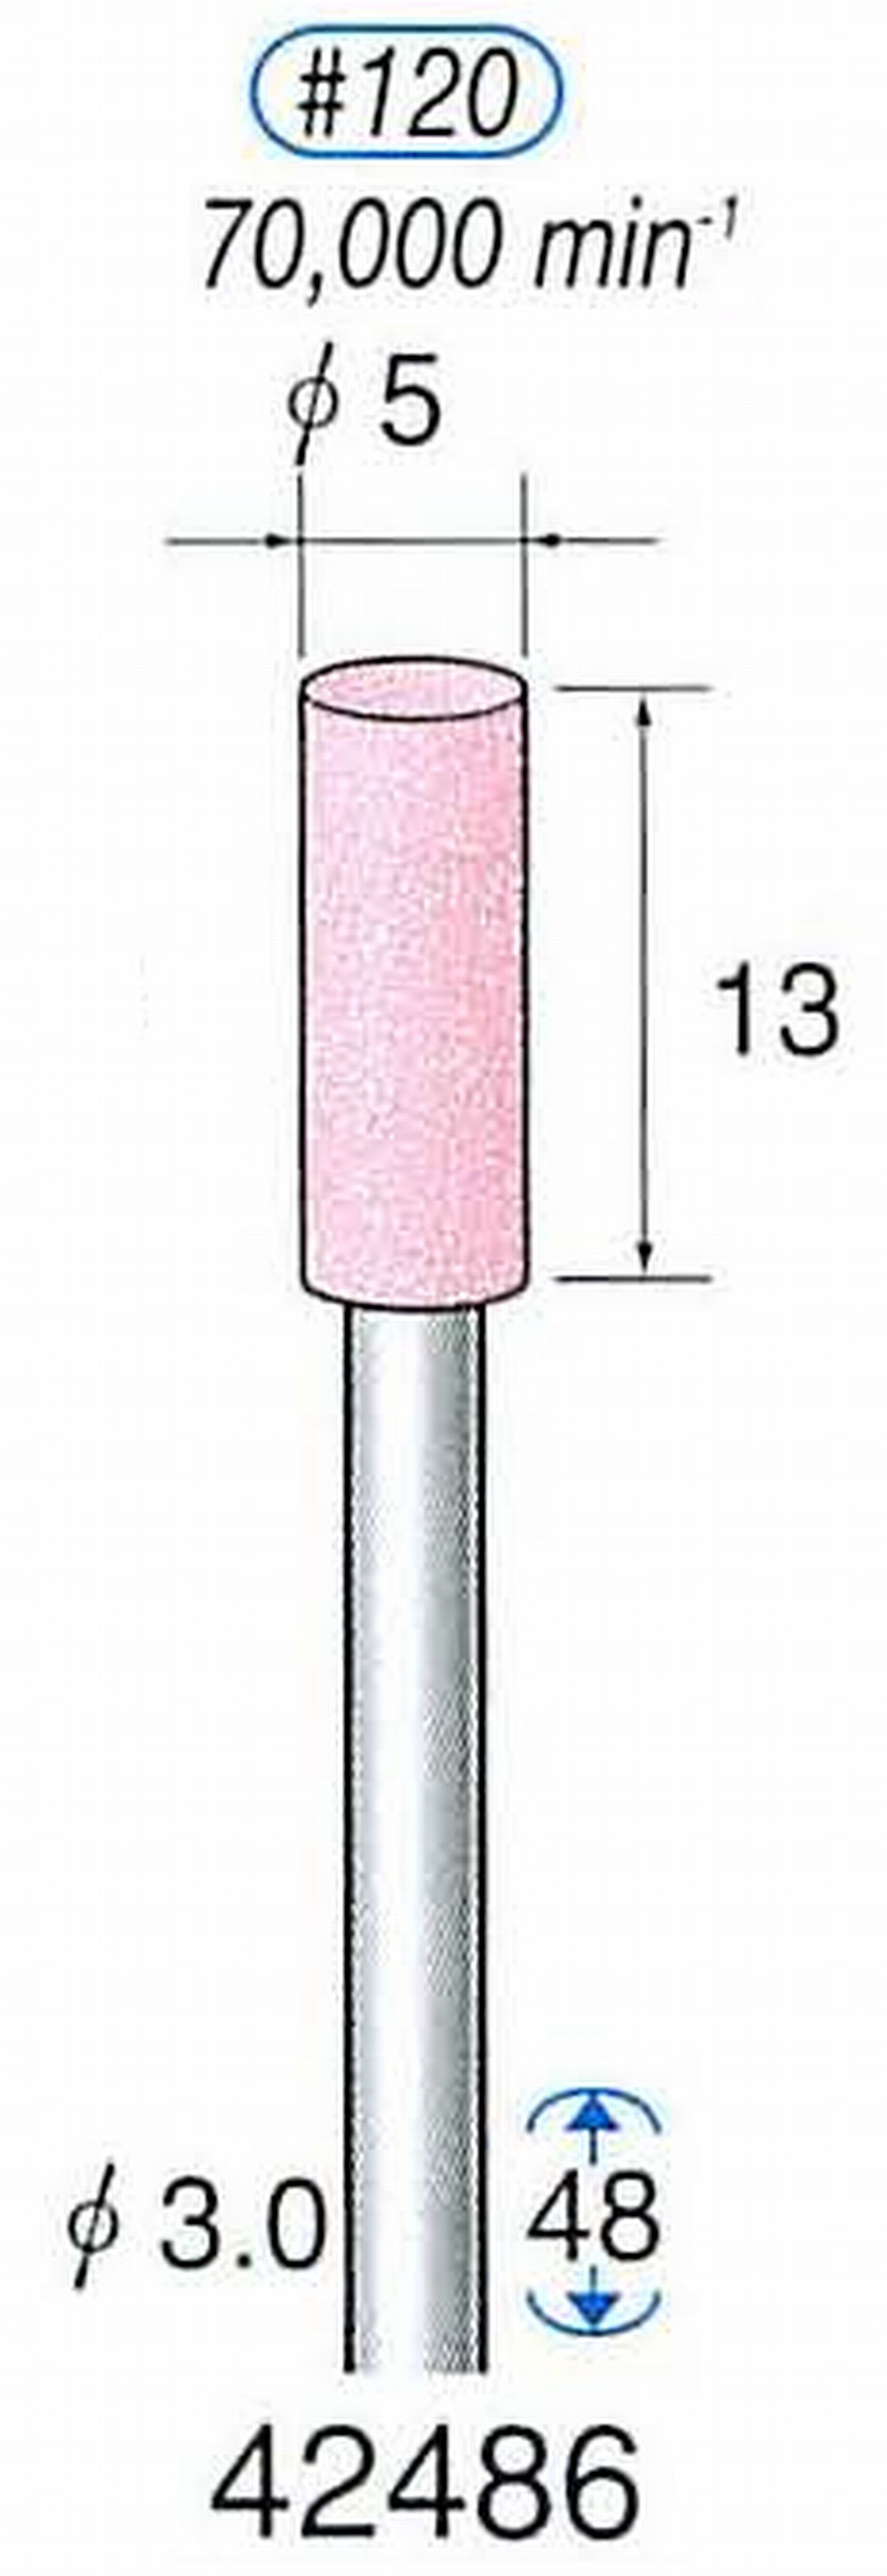 ナカニシ/NAKANISHI 軸付砥石(PA砥粒) 一般研削用 軸径(シャンク) φ3.0mm 42486